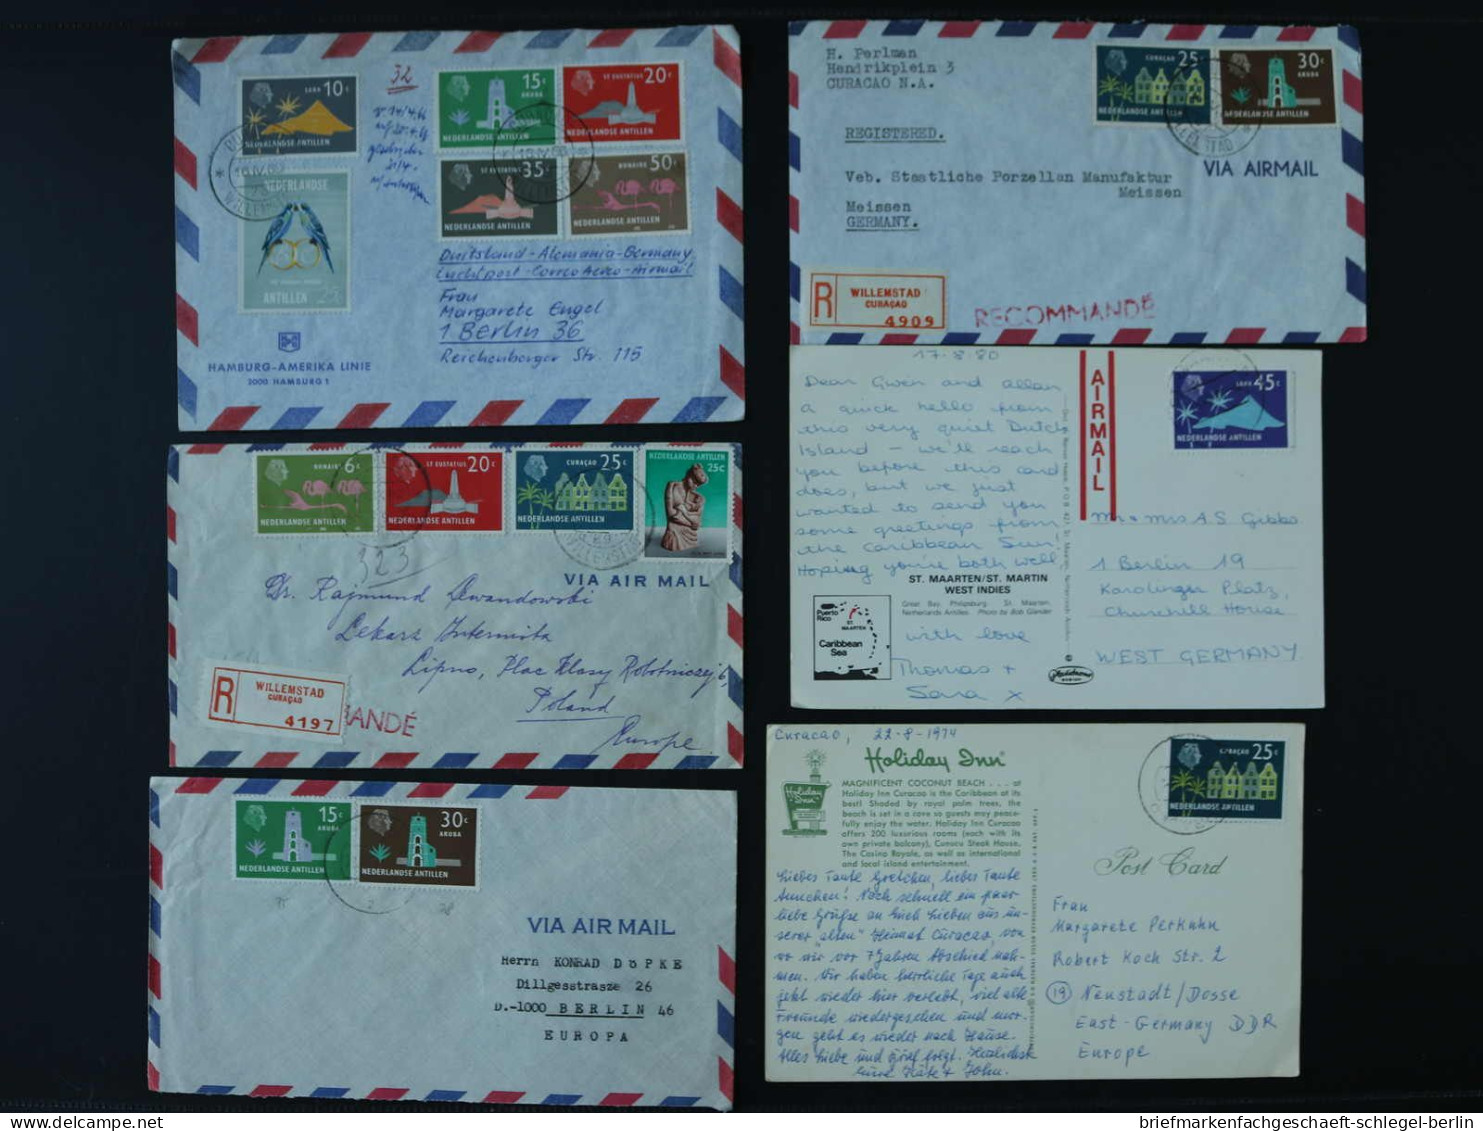 Niederländische Antillen, Brief - Antillen